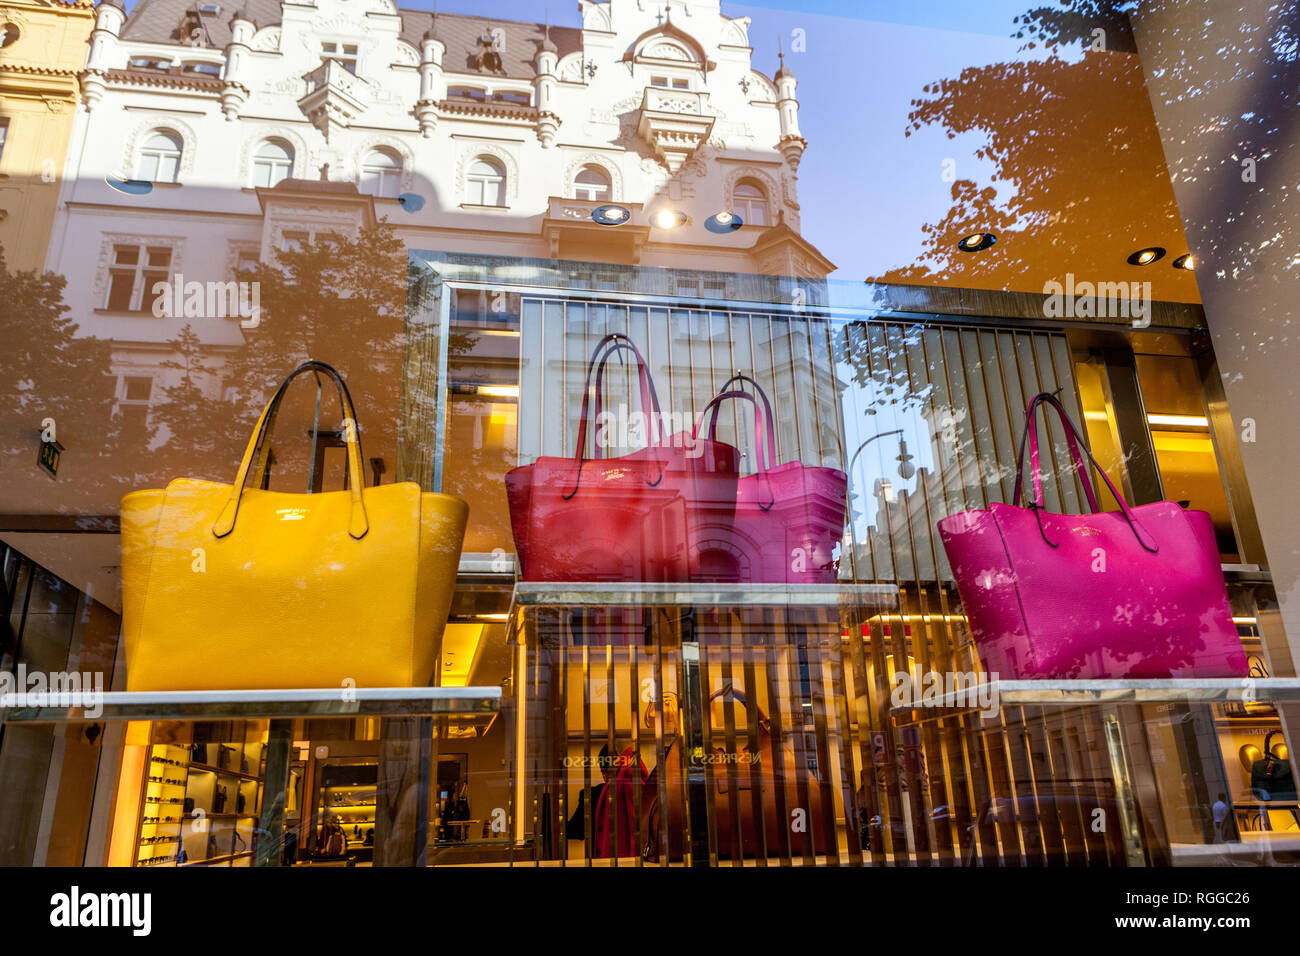 Gucci Schaufensterhandtaschen im Gucci Store, Parizska Street, Prag  Tschechische Republik Stockfotografie - Alamy